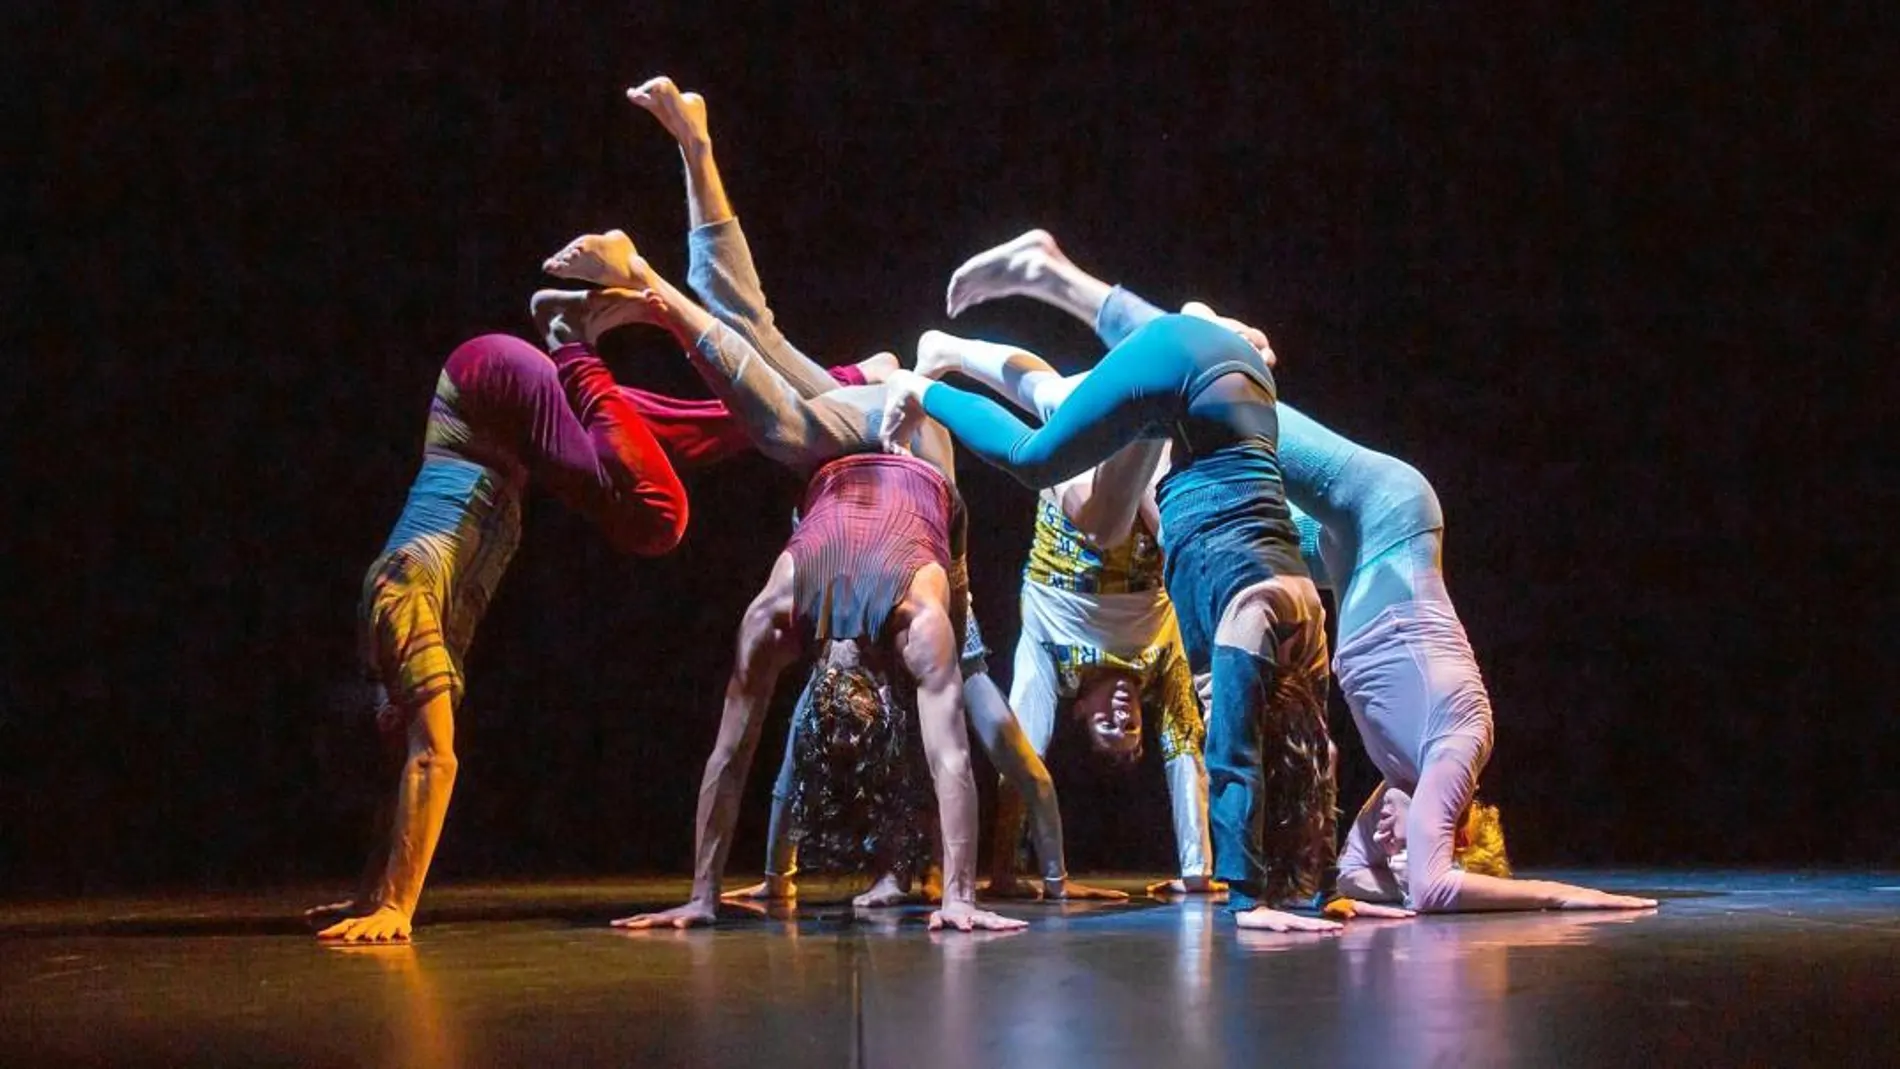 La compañía Zoo de Thomas Hauert interpretará este fin de semana la obra «Inaudible» en que los bailarines exploran los límites del movimiento a partir de líneas de música que ellos interpretan